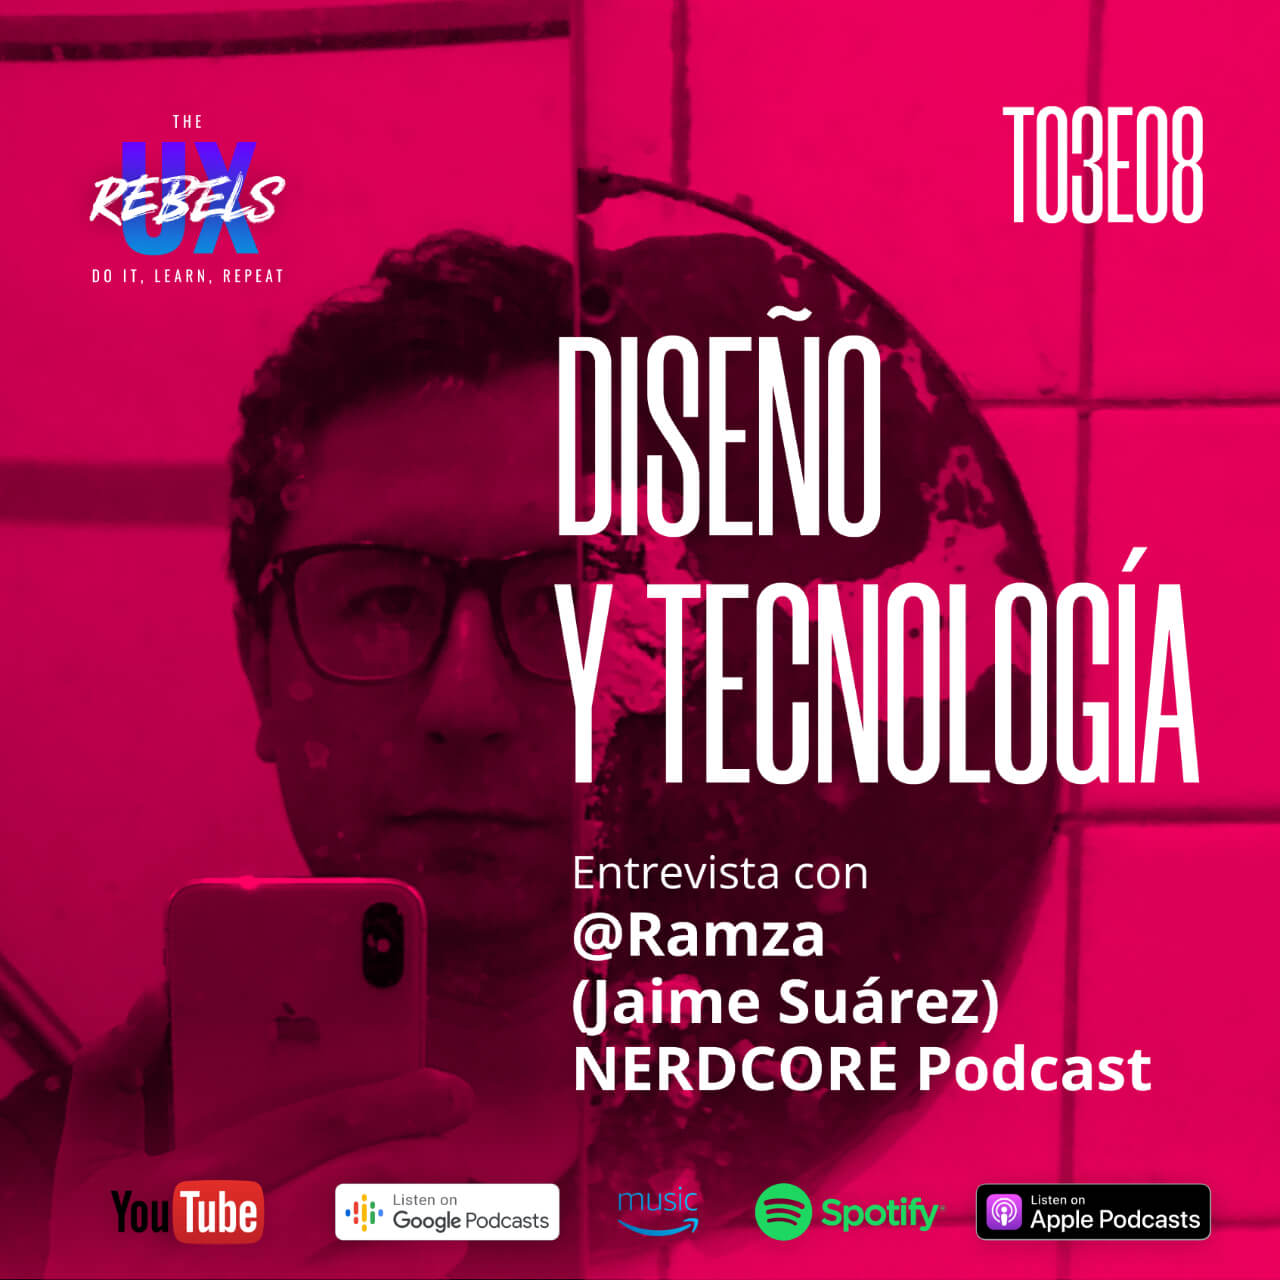 Escucha el episodio con Jaime Suárez sobre Diseño y tecnología